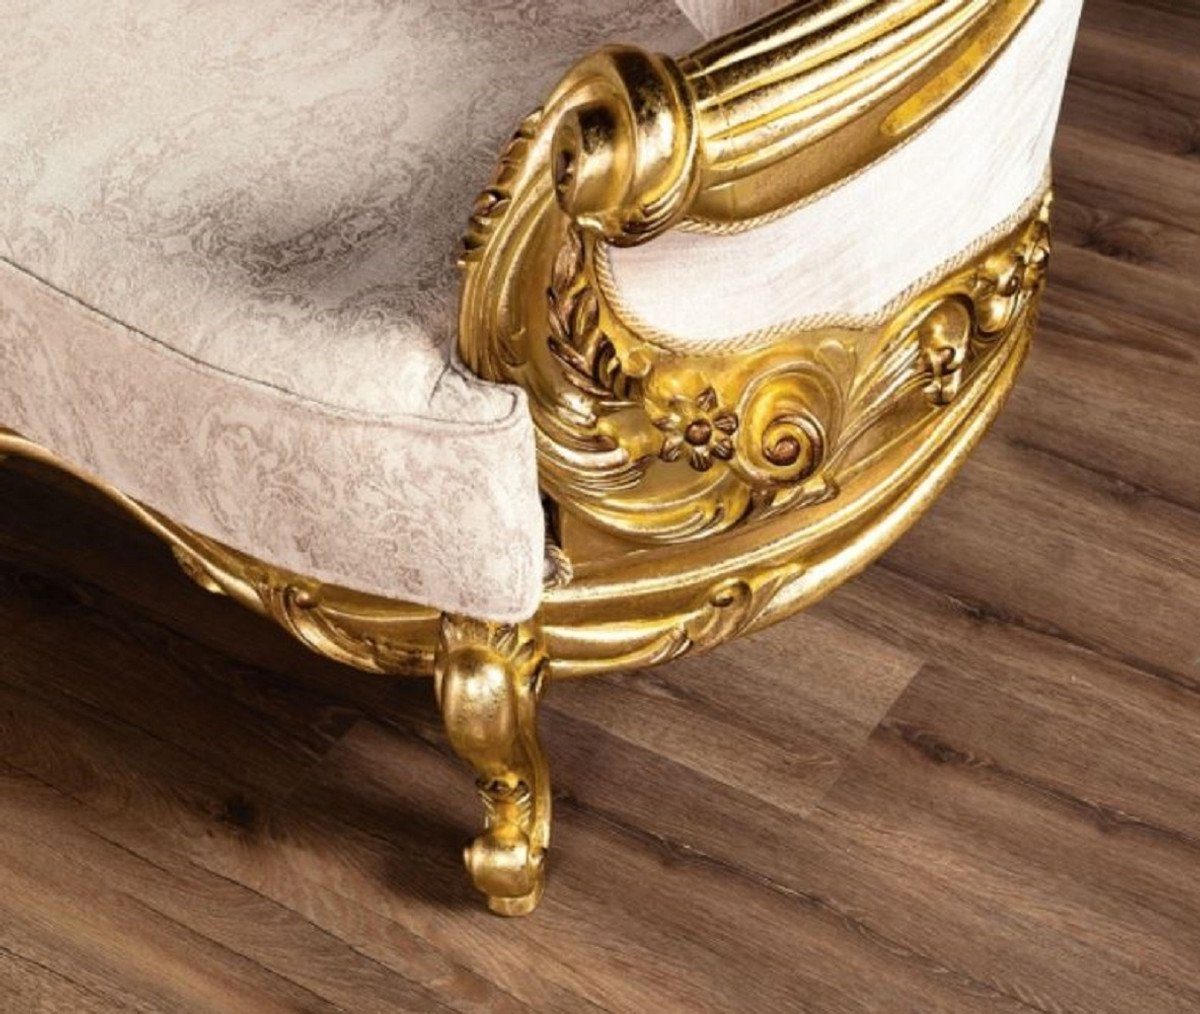 Edel - Wohnzimmer - Sofa / Barock Sofa & Casa - mit Prunkvoll Sofa Gold Luxus Muster Cremefarben Prunkvolles Padrino Barock Wohnzimmer Möbel